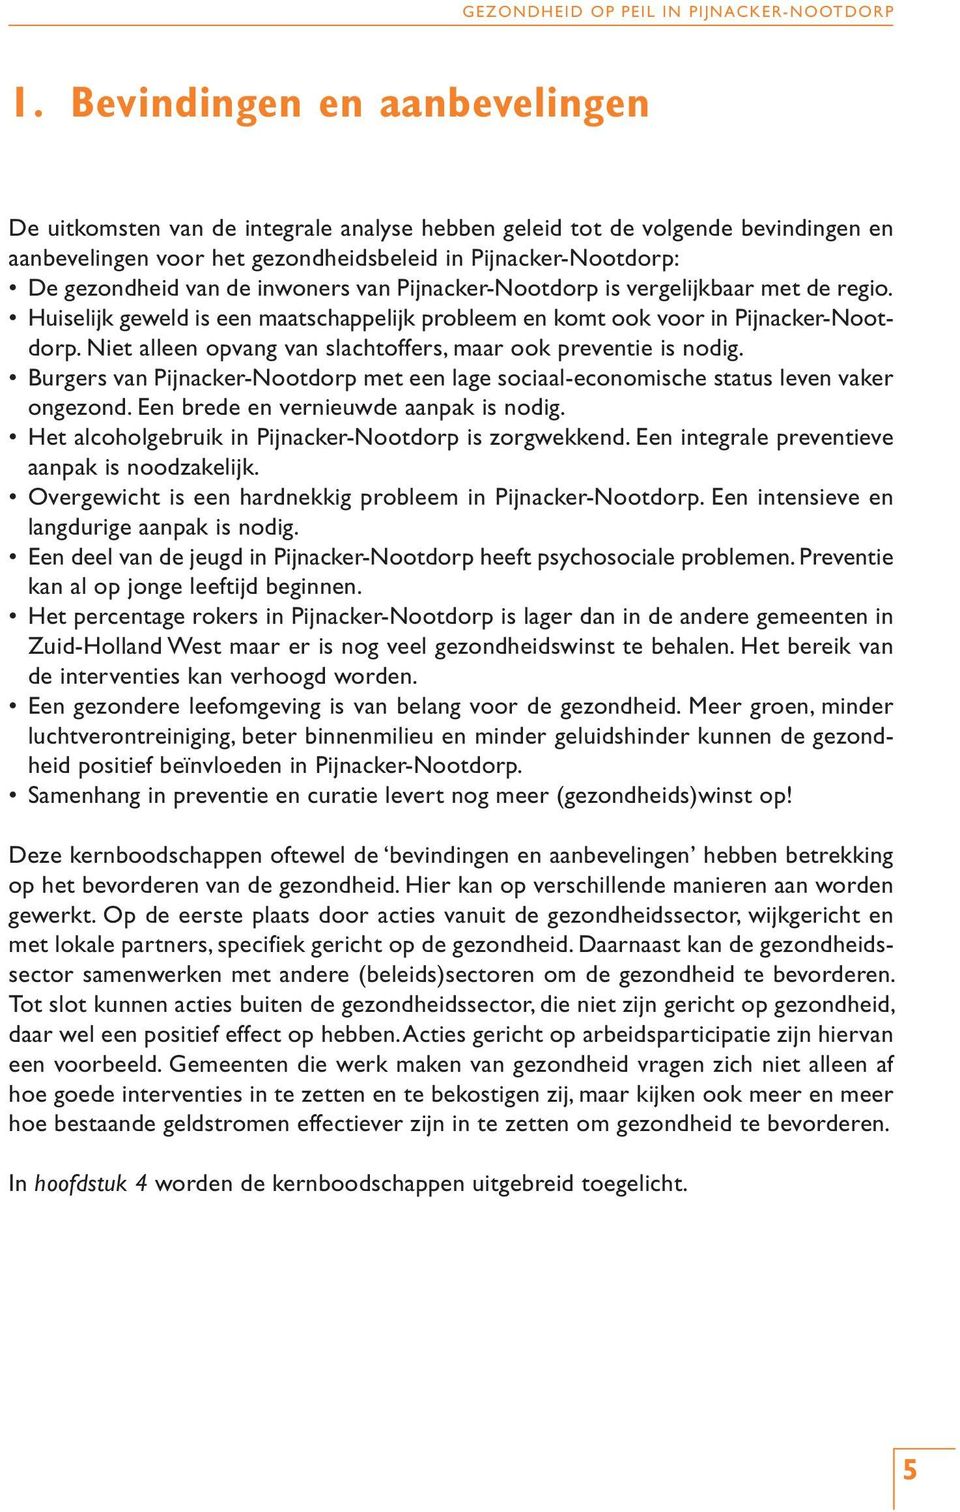 Niet alleen opvang van slachtoffers, maar ook preventie is nodig. Burgers van Pijnacker-Nootdorp met een lage sociaal-economische status leven vaker ongezond. Een brede en vernieuwde aanpak is nodig.